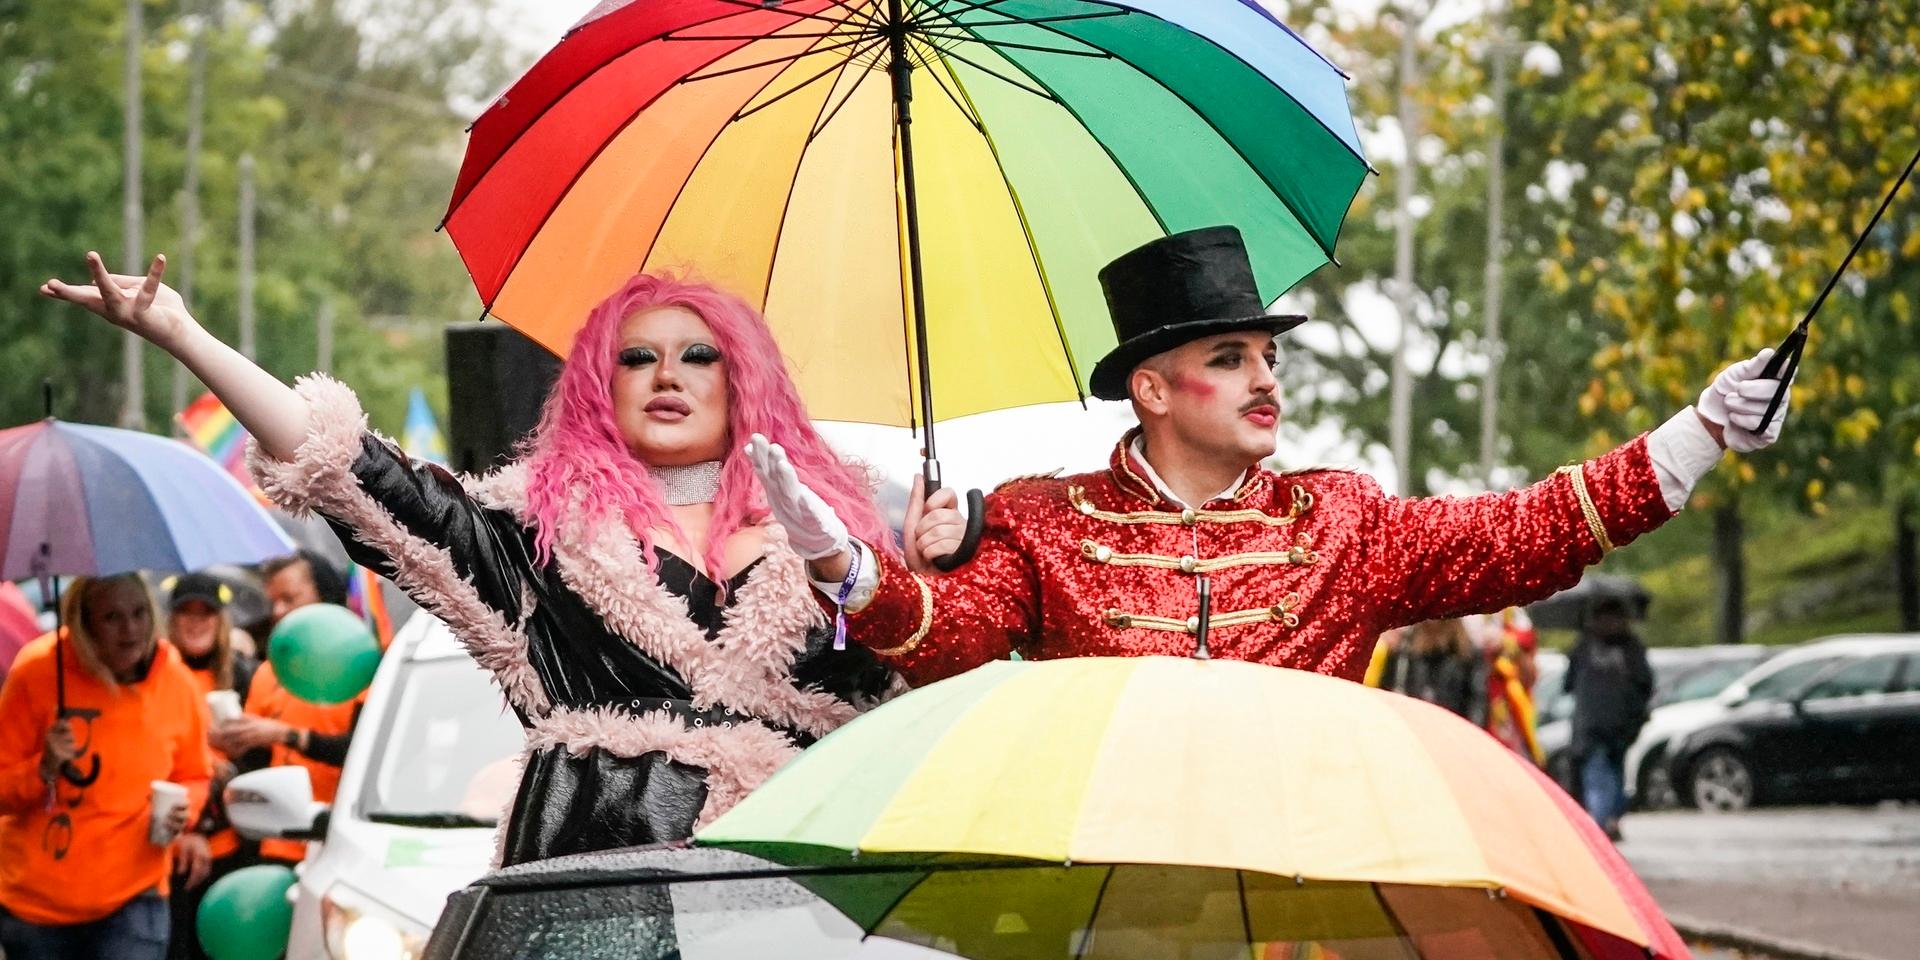 Prideparaden under West Pride går på lördagen mellan Gibraltarvallen och Bältespännarparken i Göteborg. 